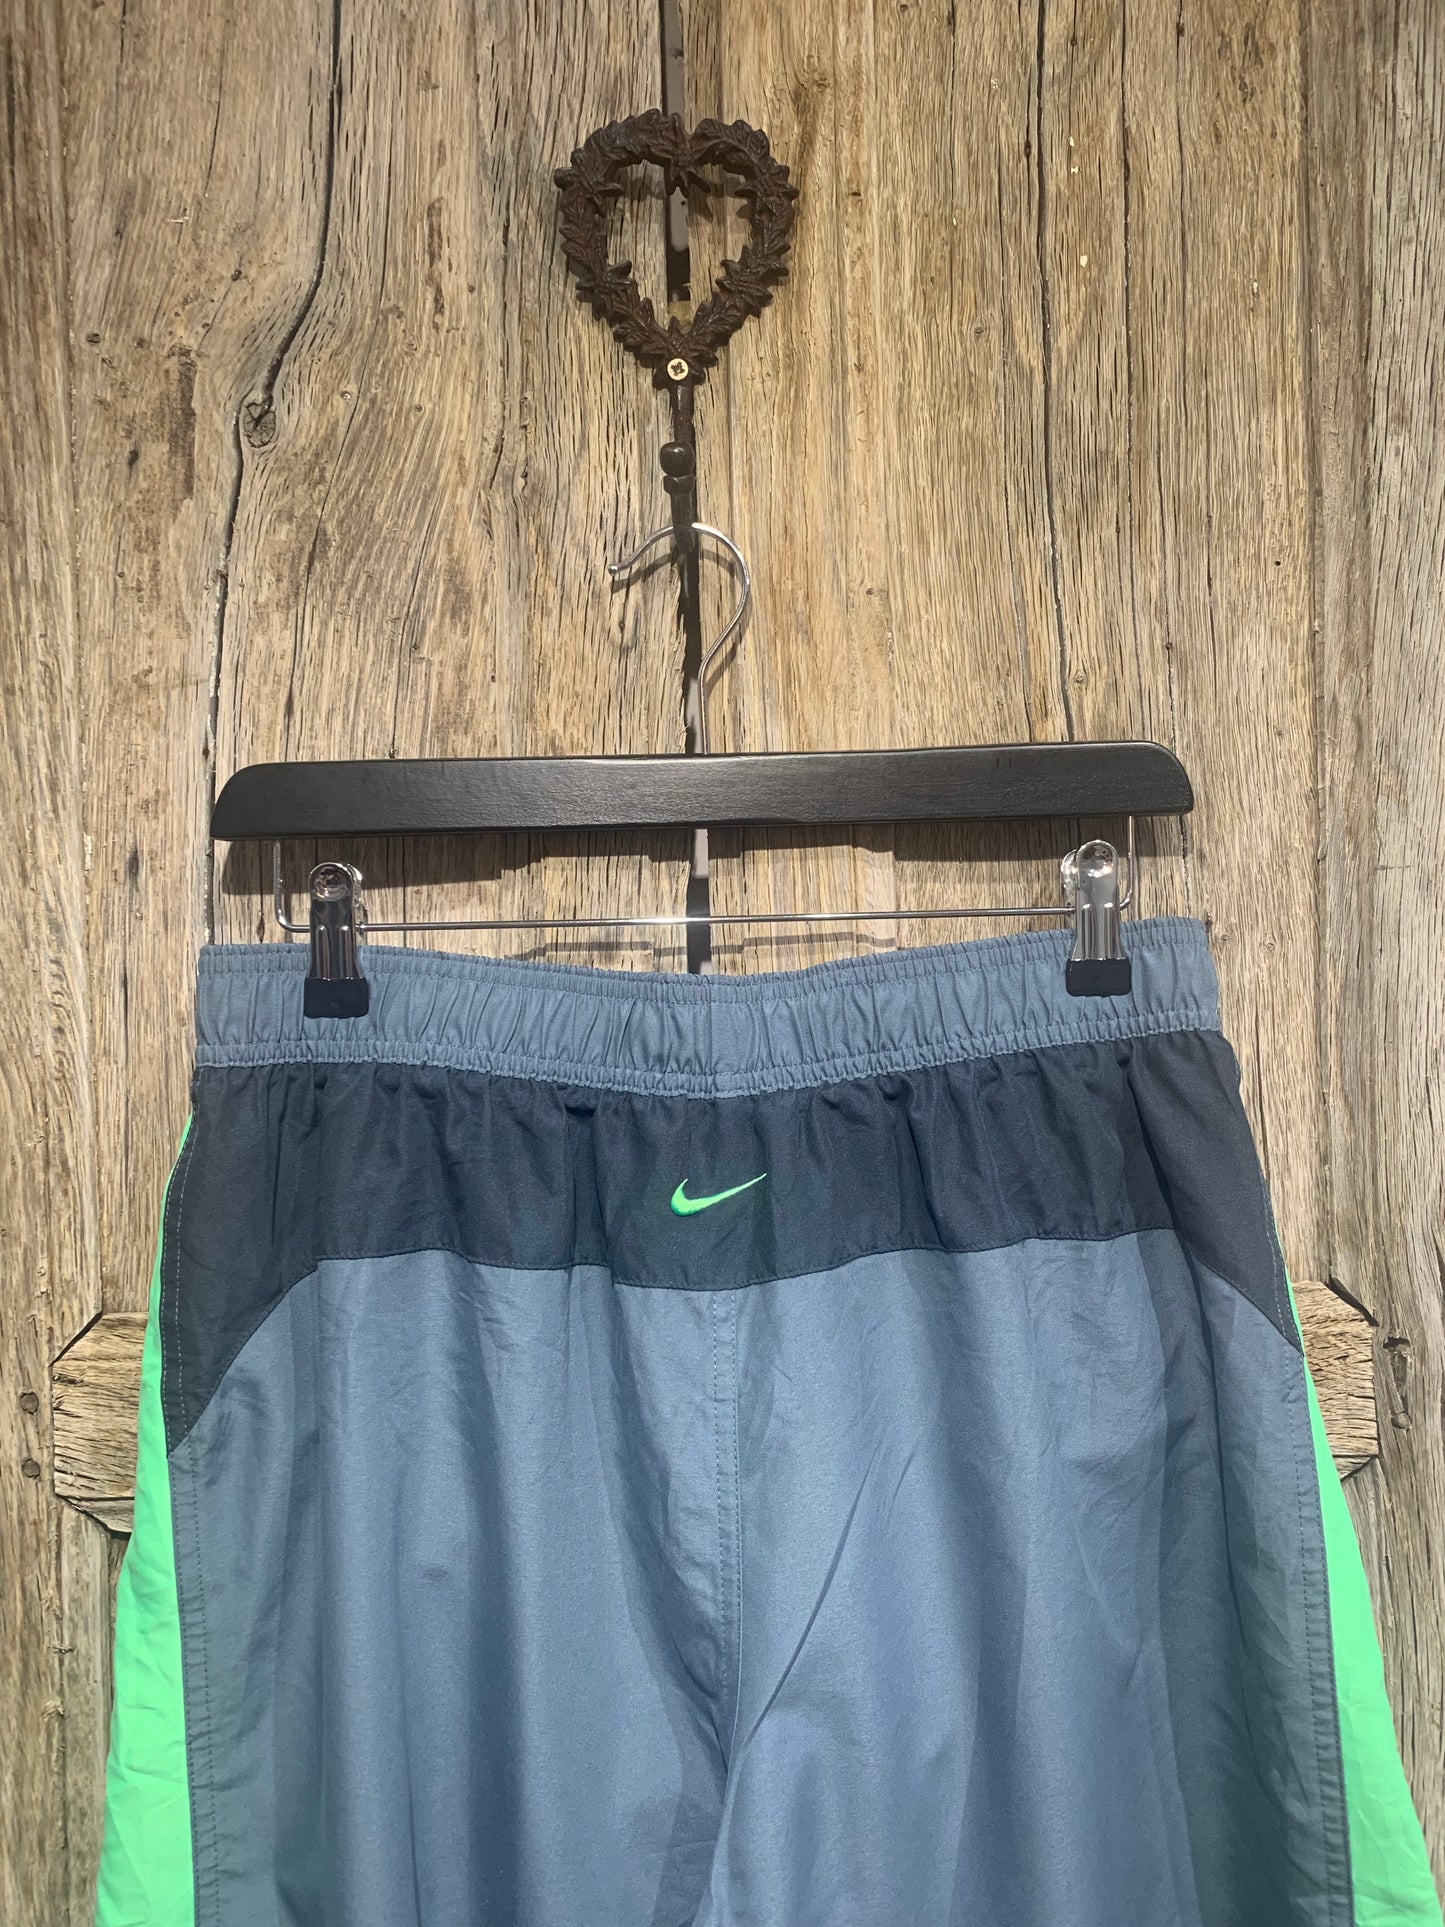 Vintage Nike Grey Training Shorts